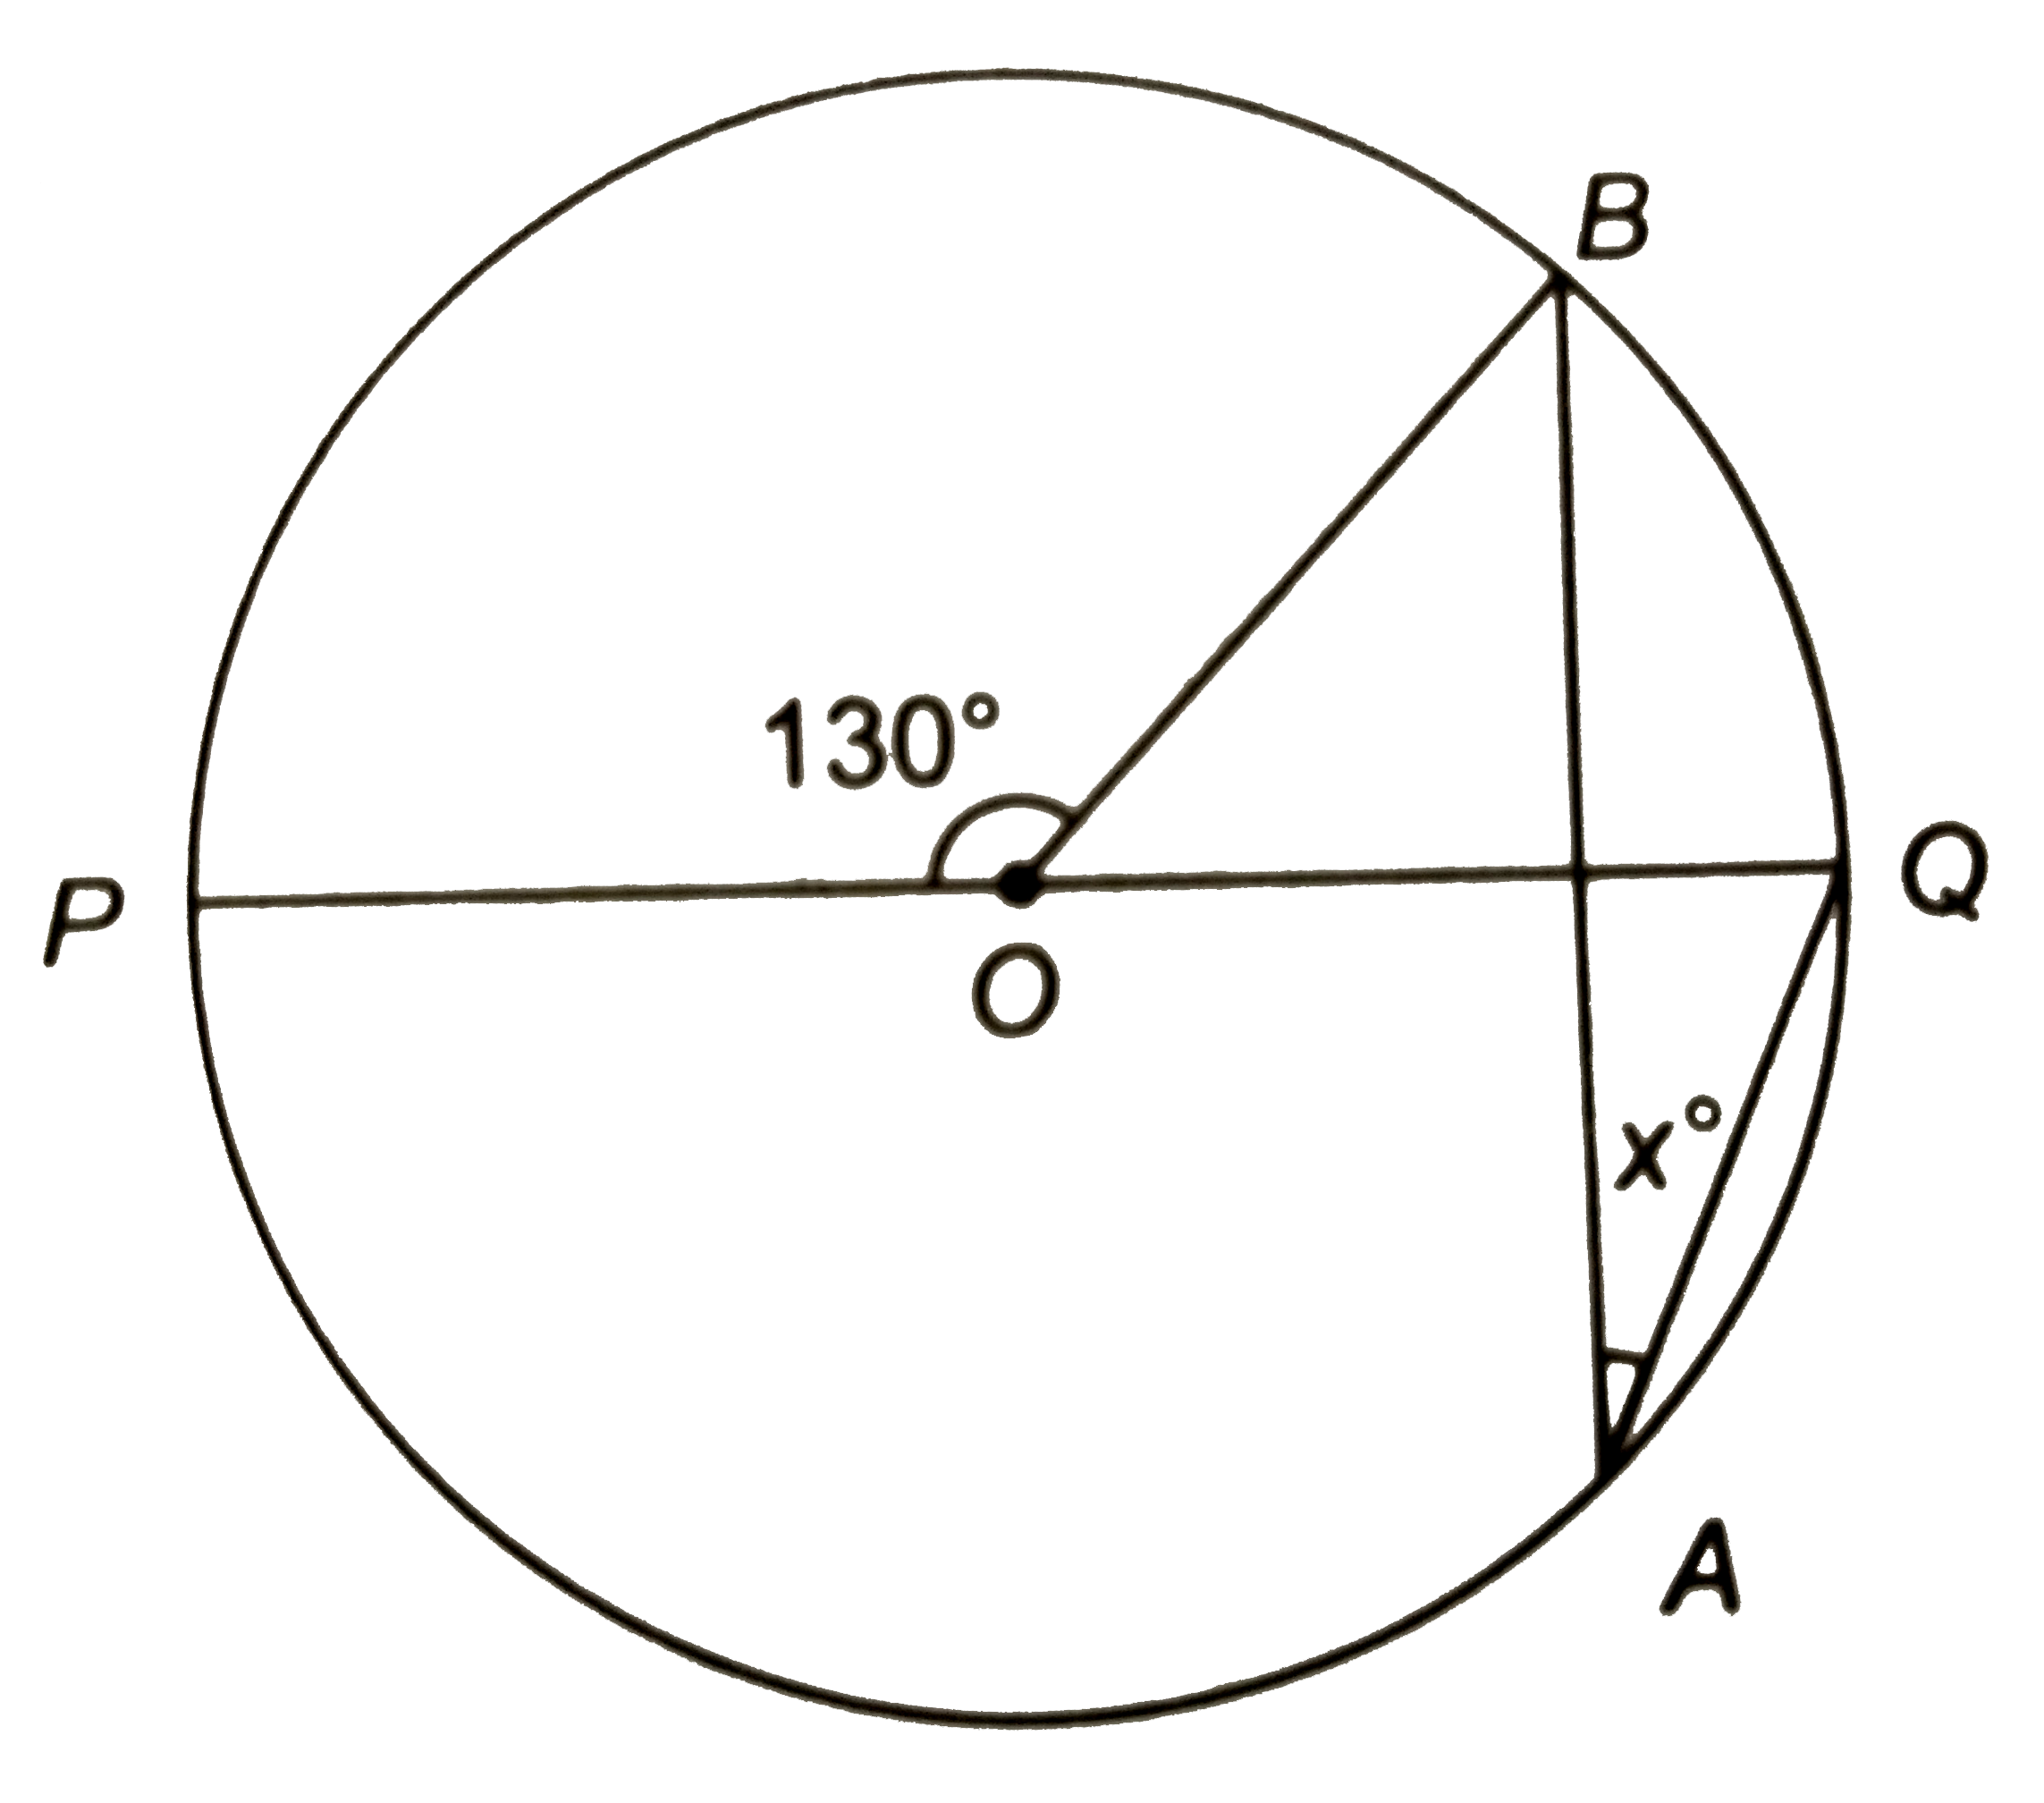 संलग्न चित्र में, 'O' वृत्त का केन्द्र है | यदि angleBOP=130^(@), तो 'x' का मन ज्ञात कीजिए |